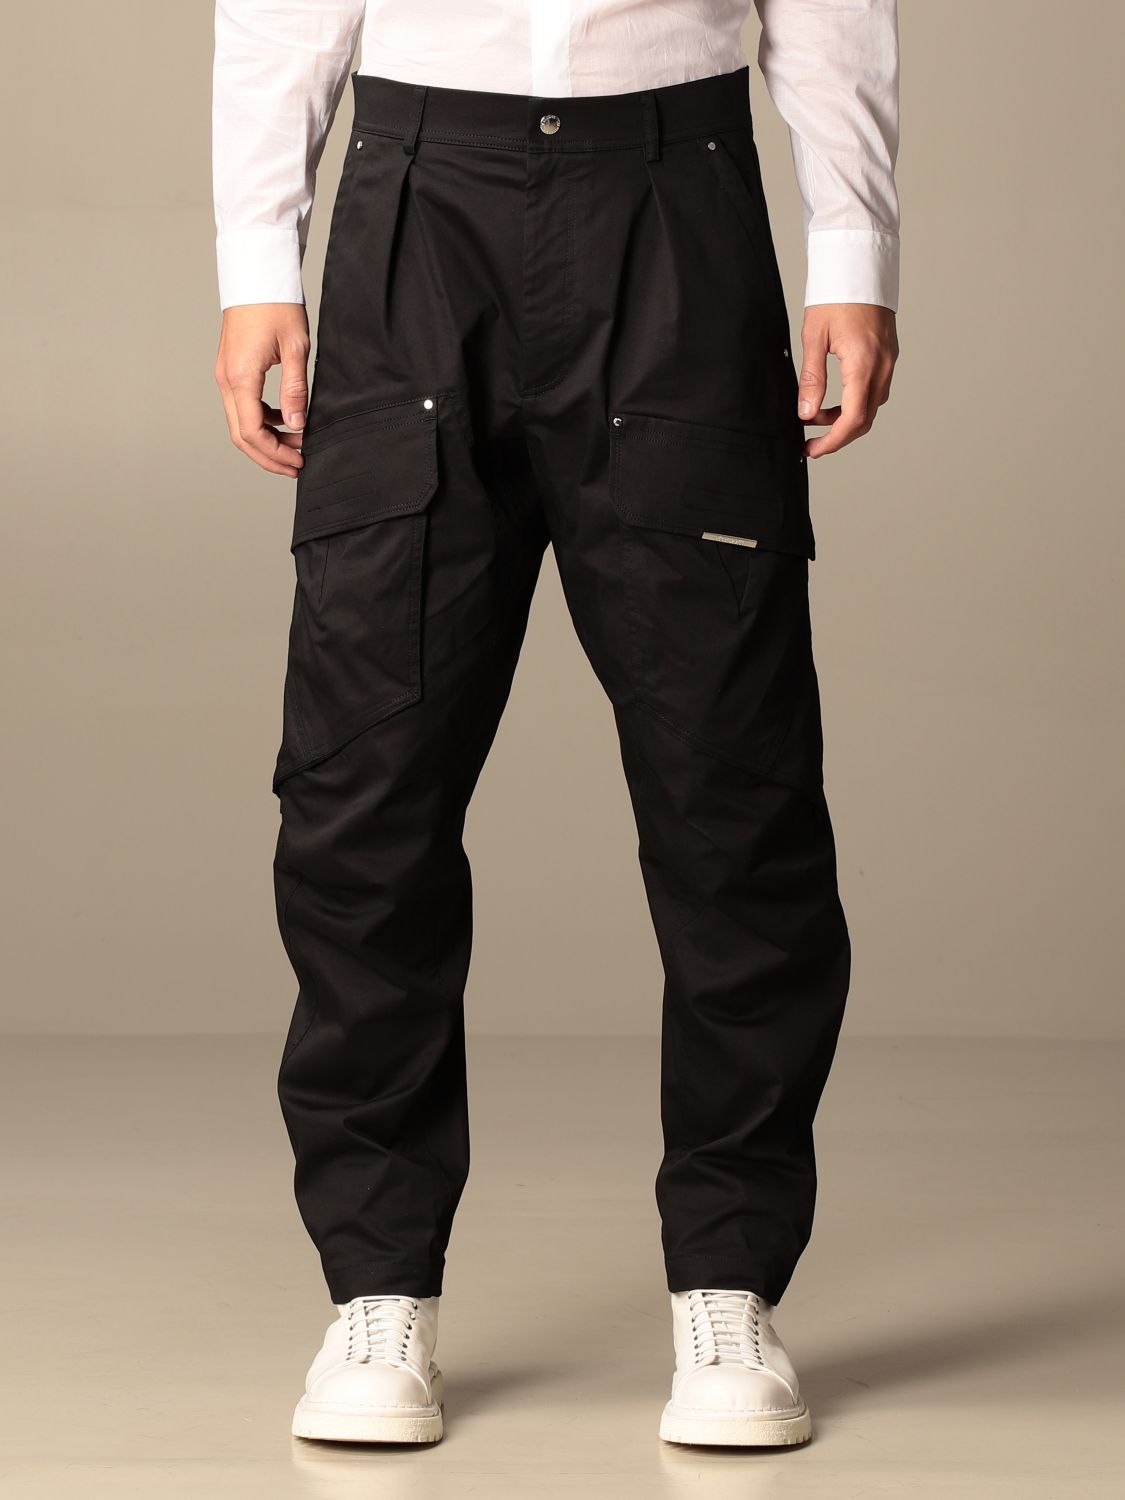 Pants Les Hommes: Les Hommes men's trousers black 1